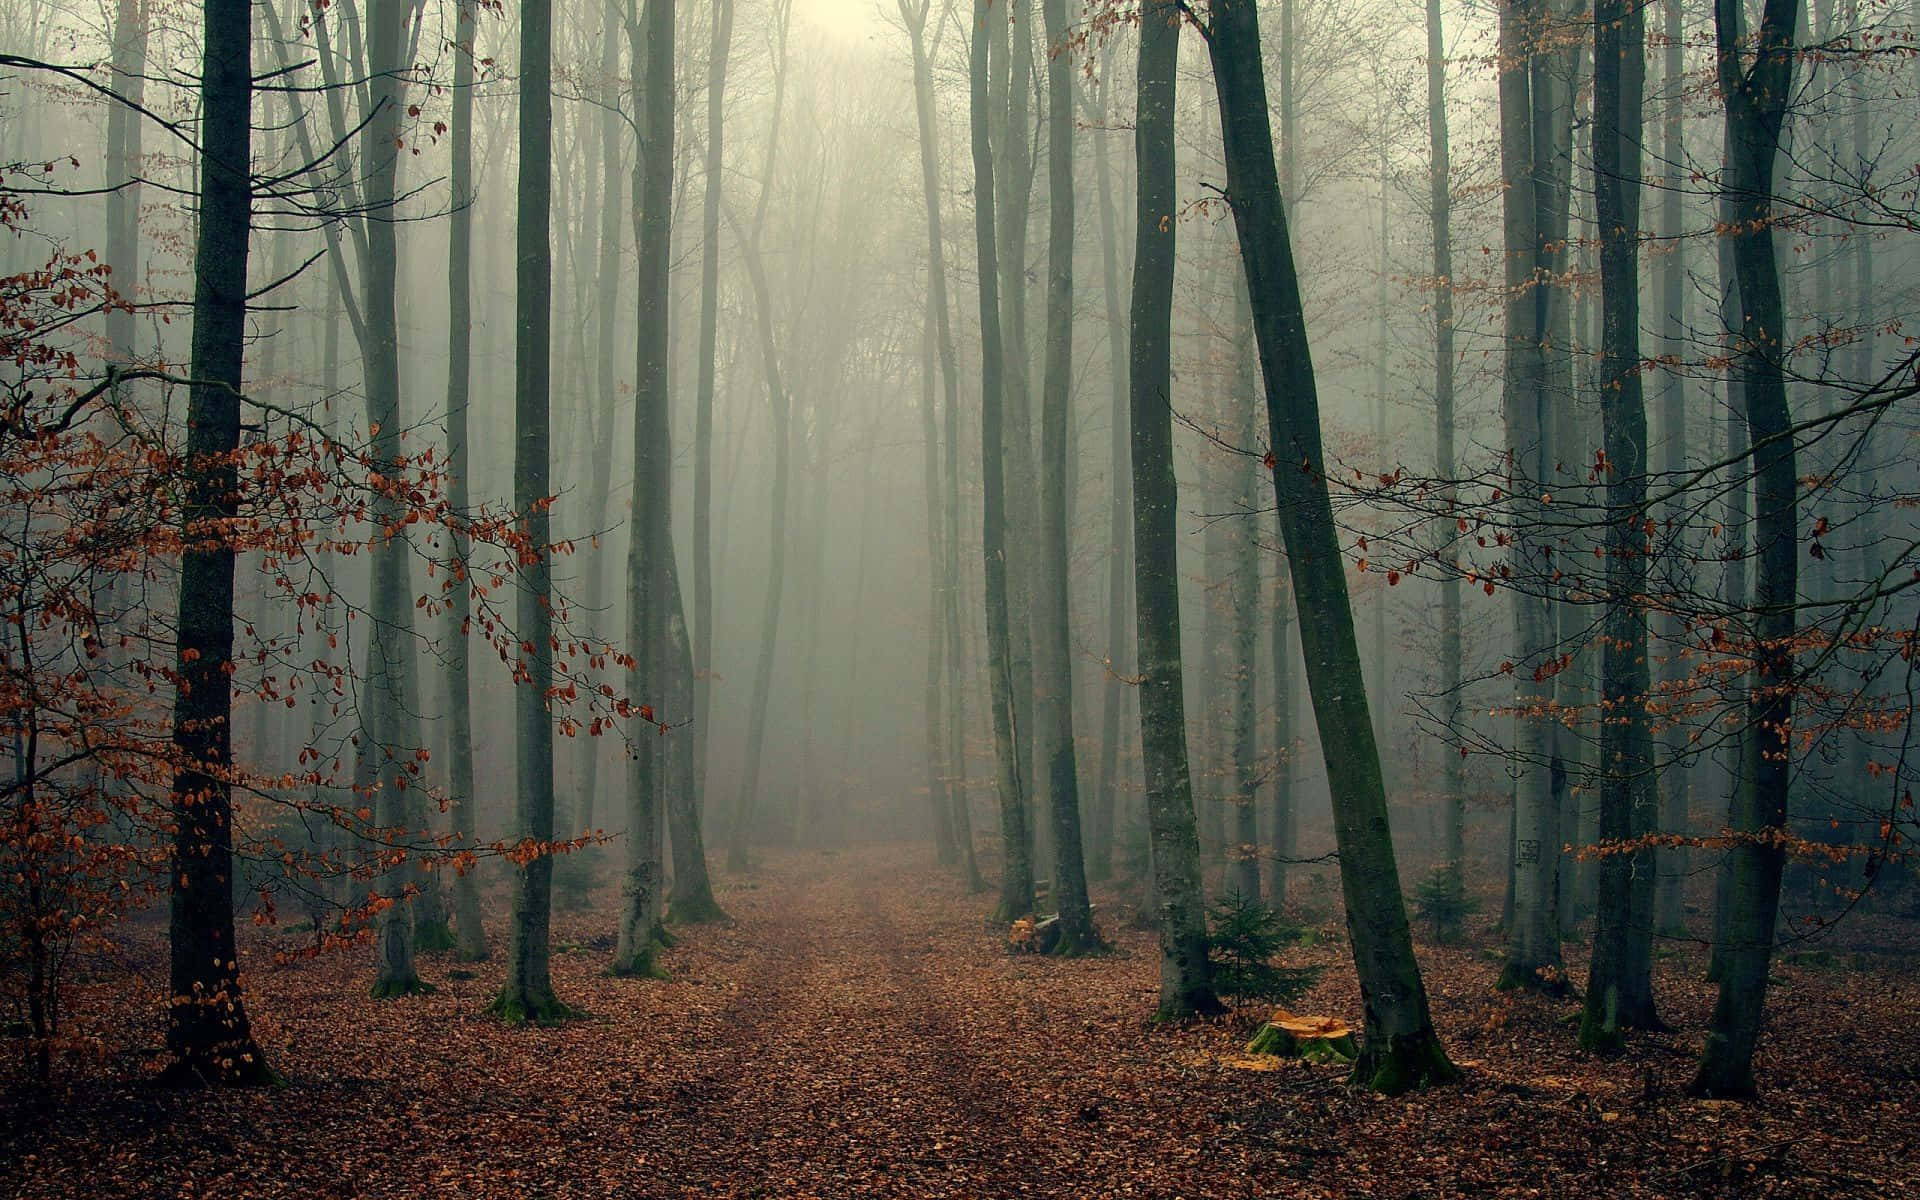 Einruhiger Baumbestandener Weg In Einem Wald.